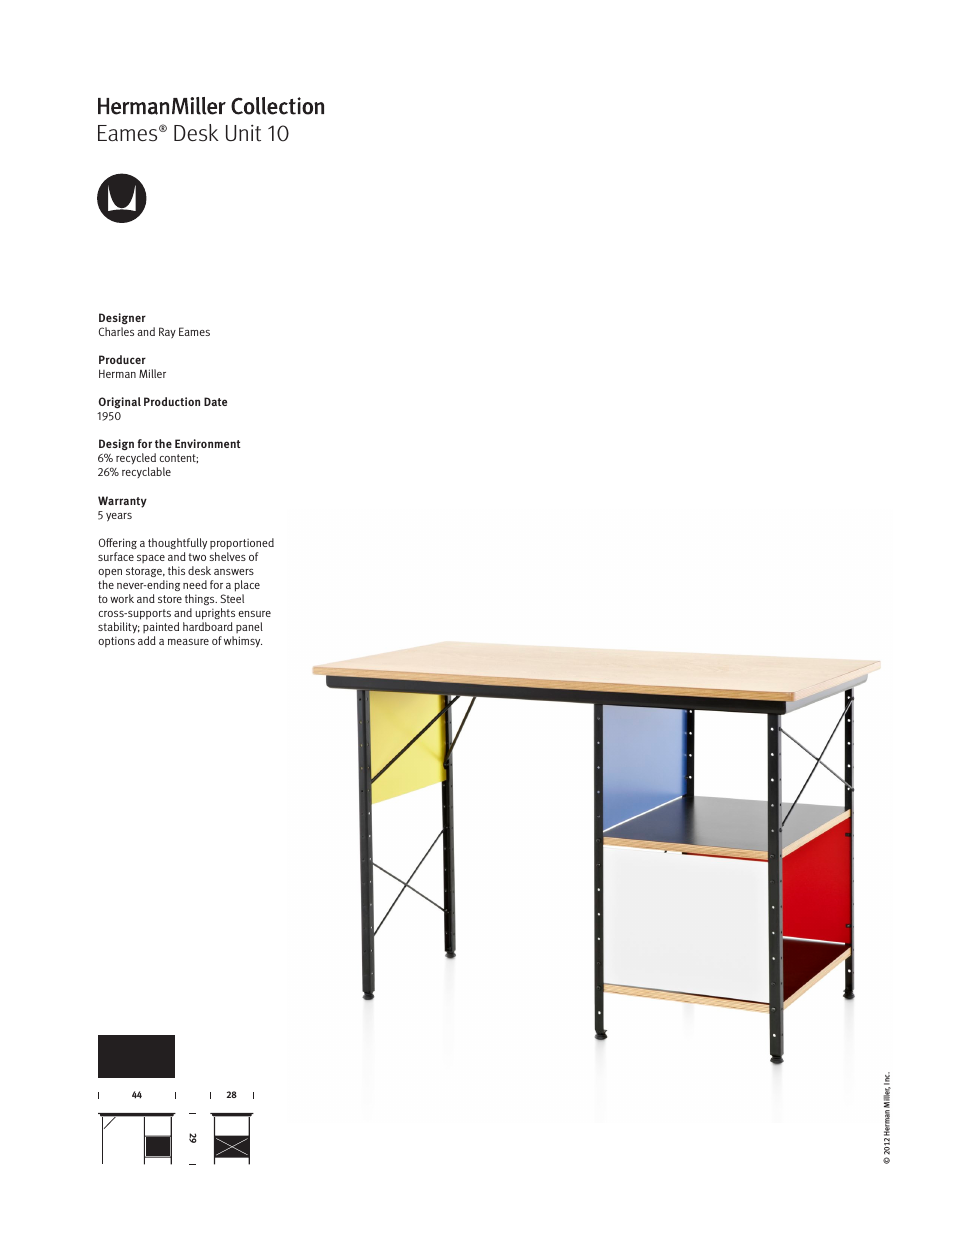 Eames Desk Unit 10 - Product sheet